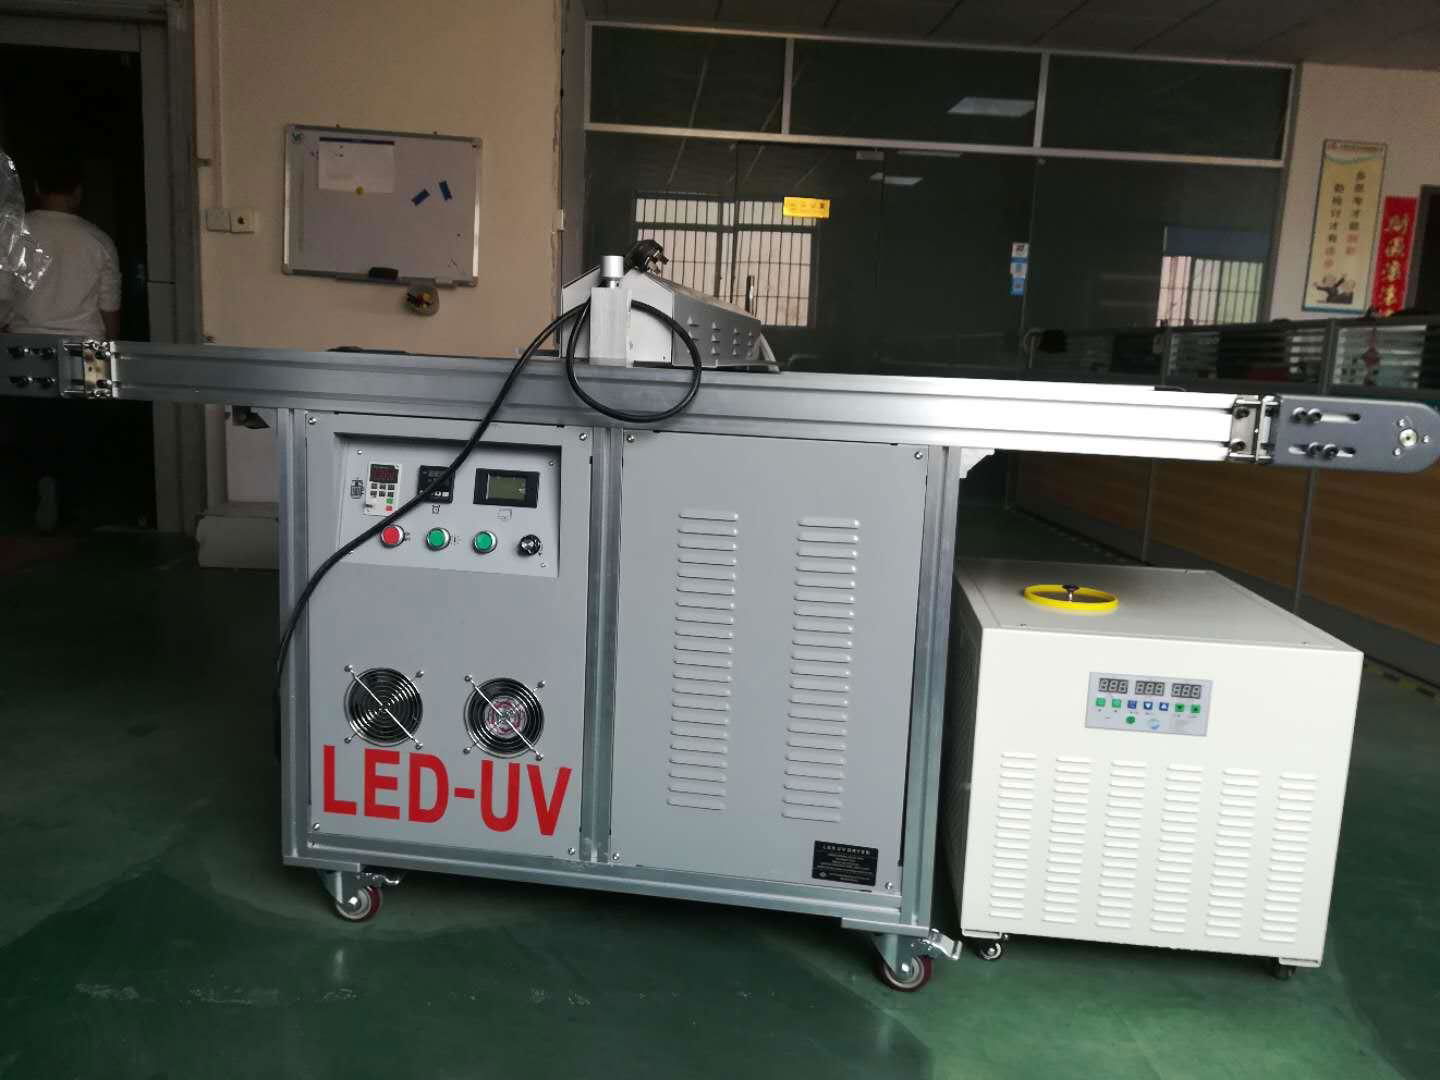 LED UV dryer, LED UV drying machine, LED UV curer, LED UV curing machine